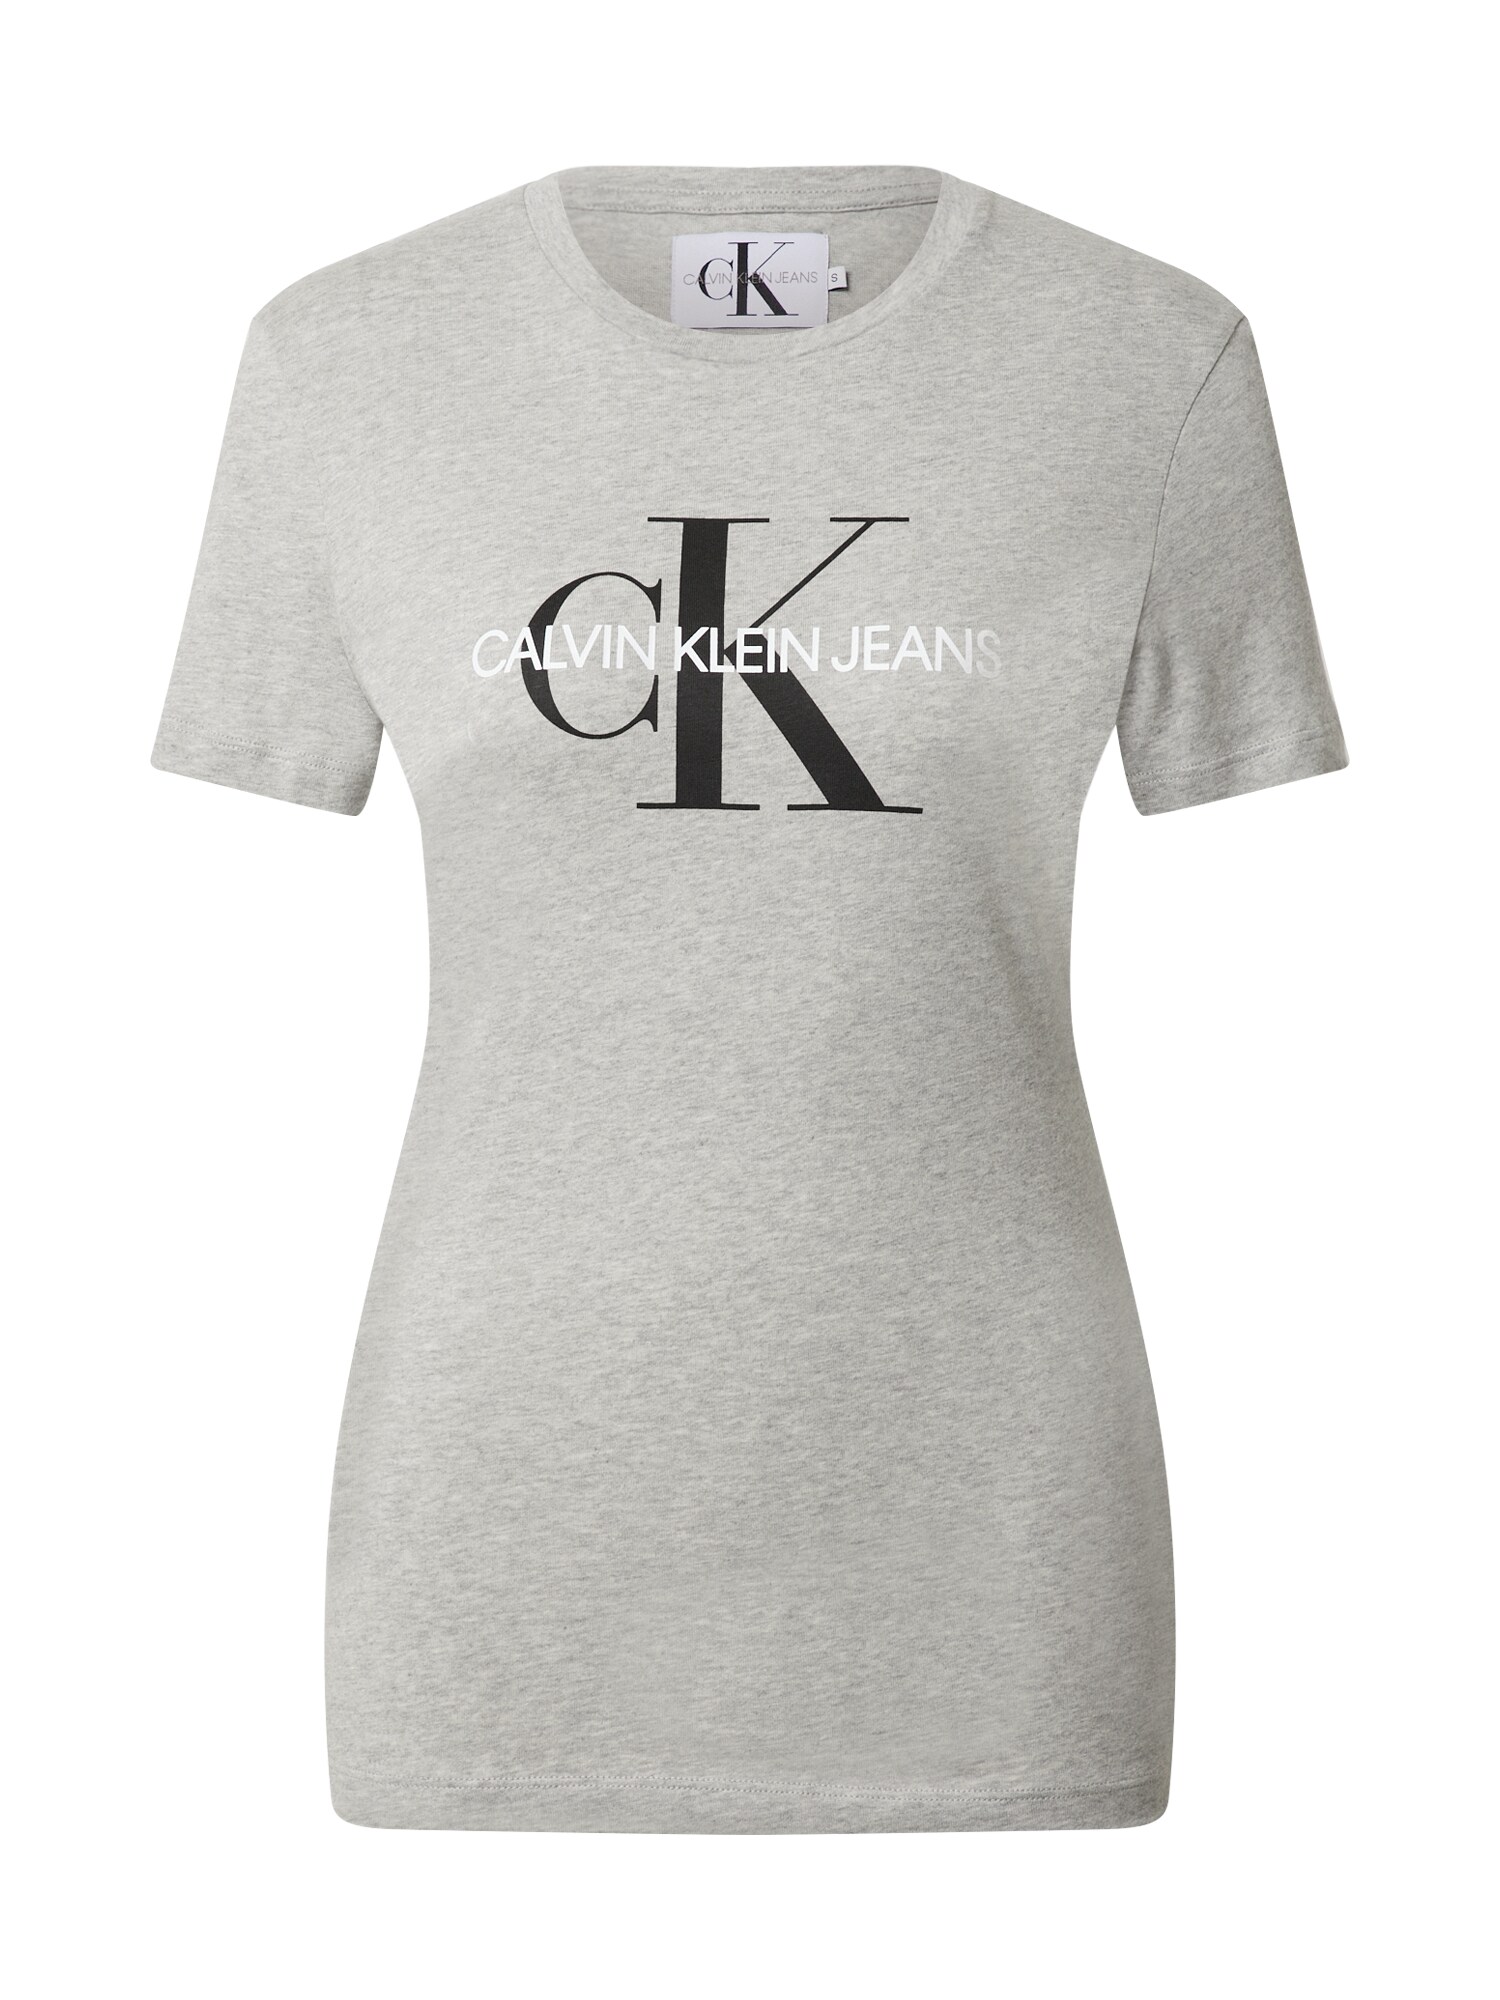 Calvin Klein Jeans Marškinėliai  šviesiai pilka / juoda / balta